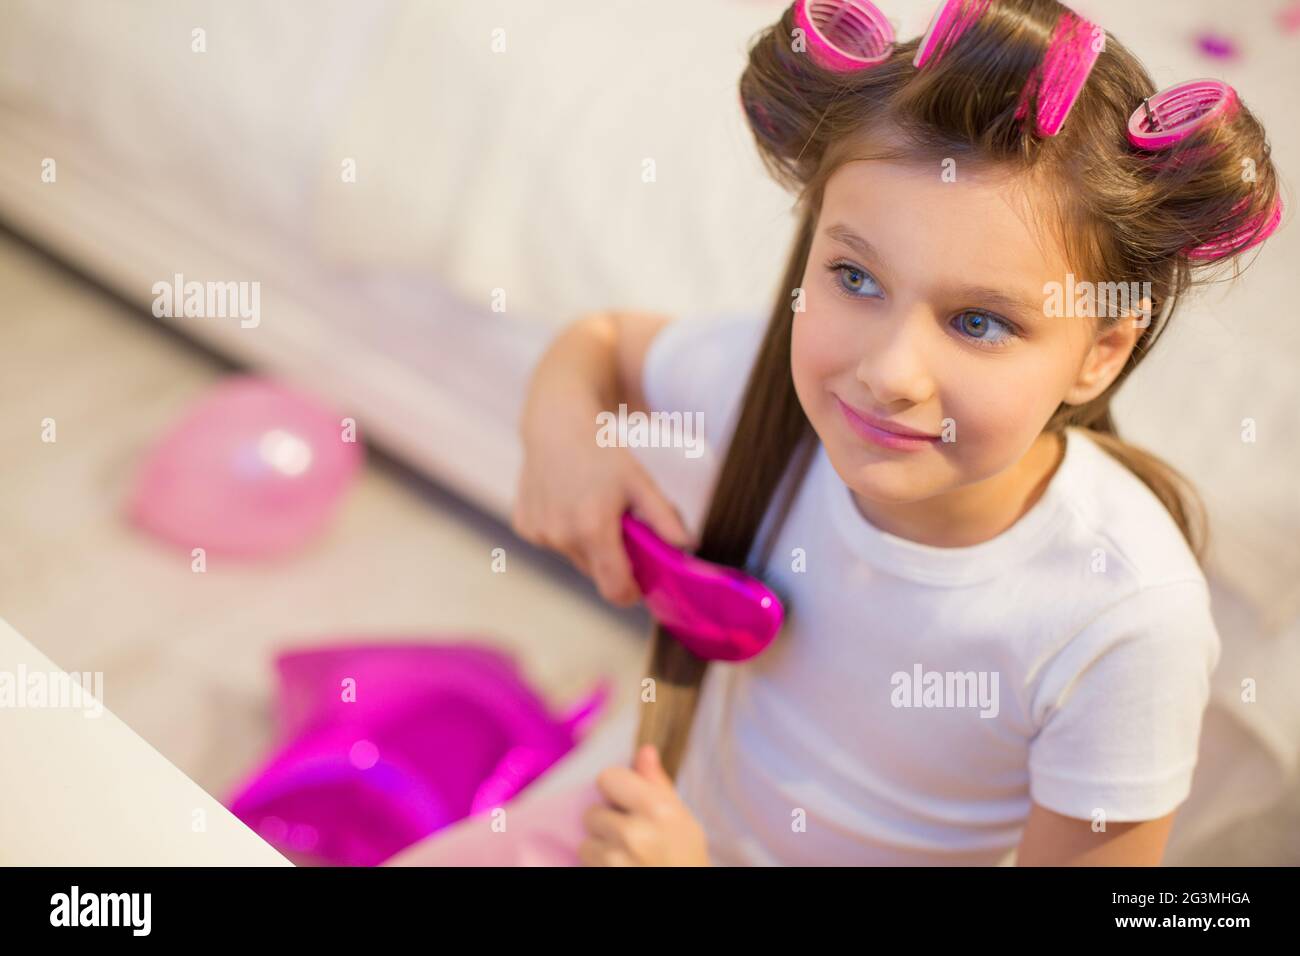 Cute girl brushing her hair. Stock Photo